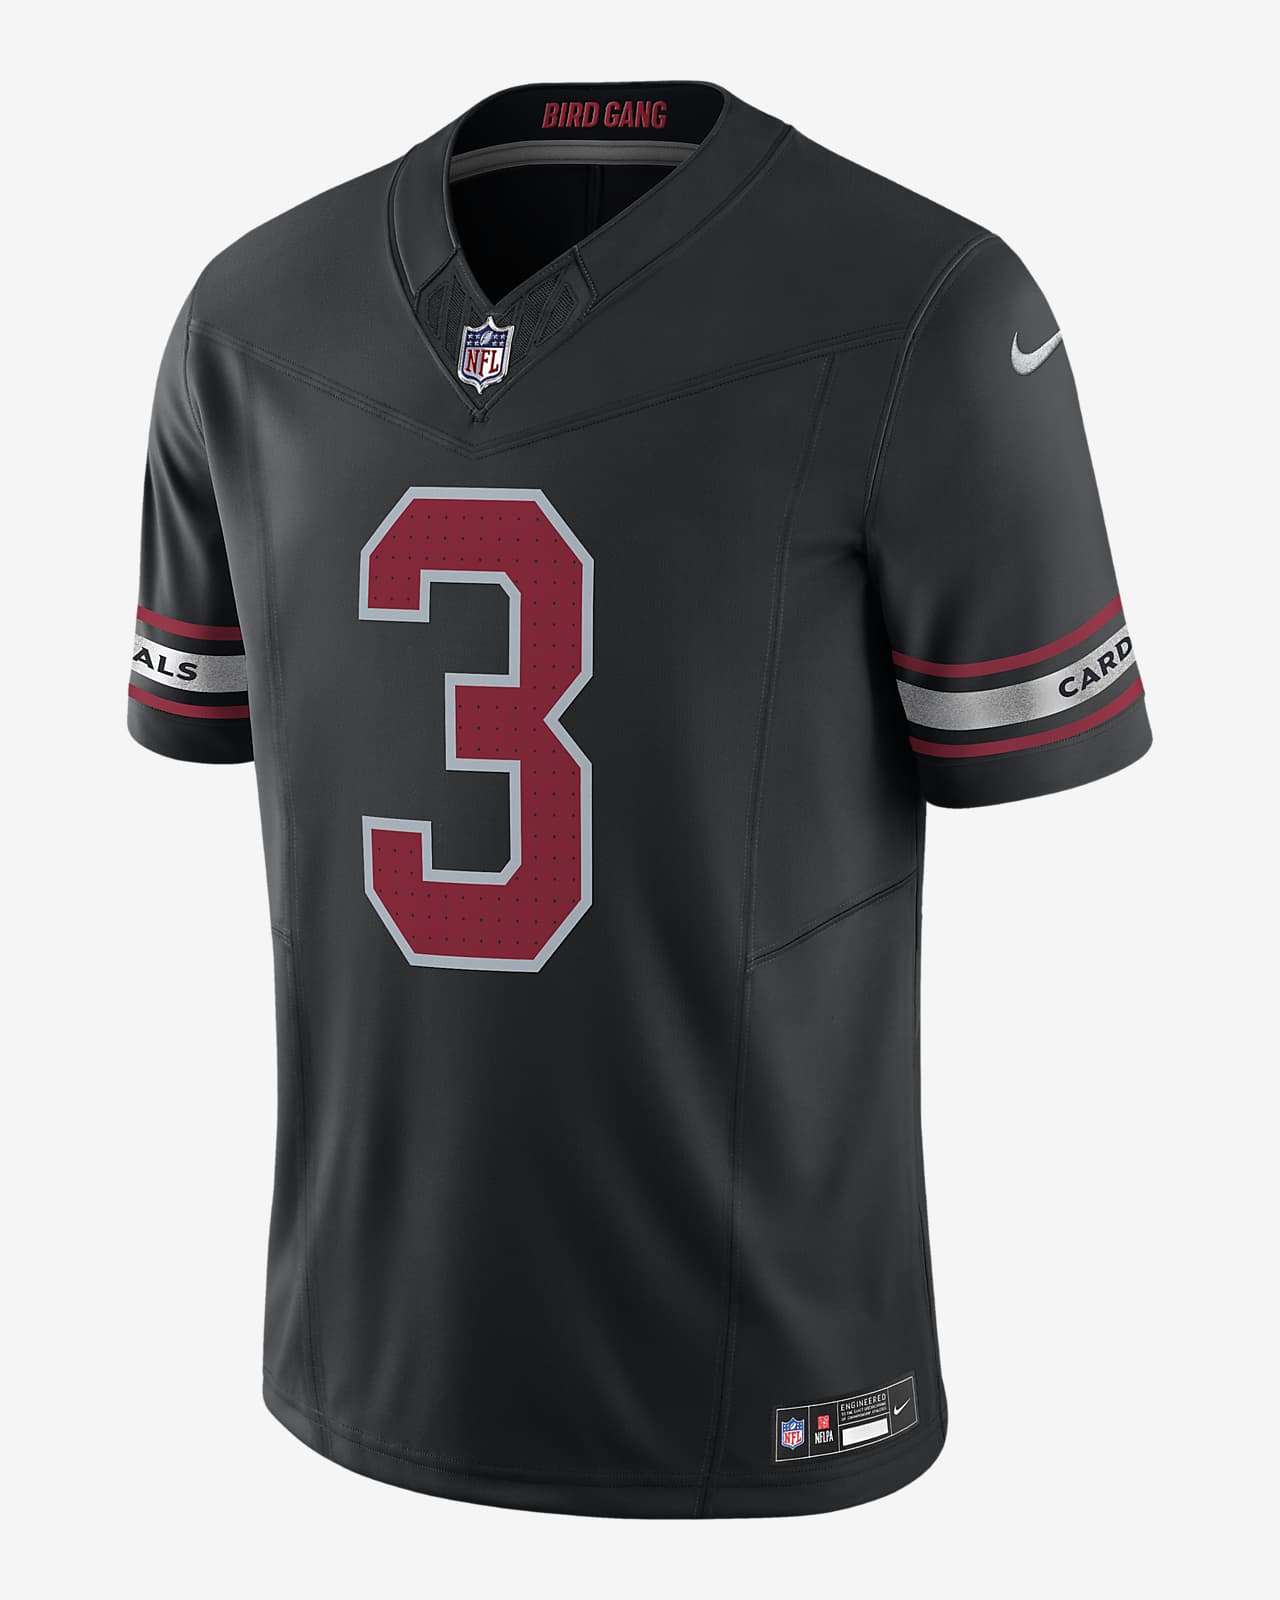 Jersey de fútbol americano Nike Dri-FIT de la NFL Limited para hombre Budda Baker Arizona Cardinals